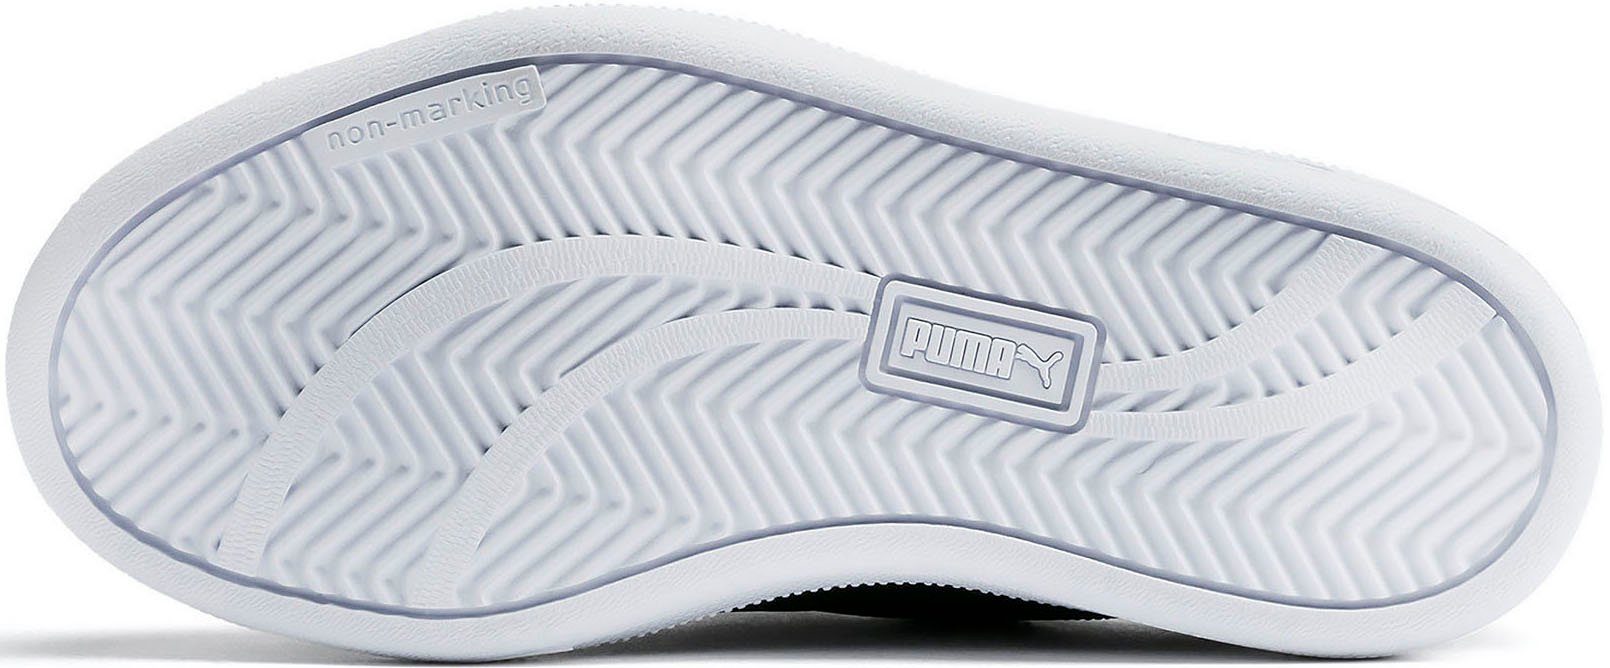 UP Sneaker schwarz-weiß mit PS V Klettverschluss PUMA PUMA